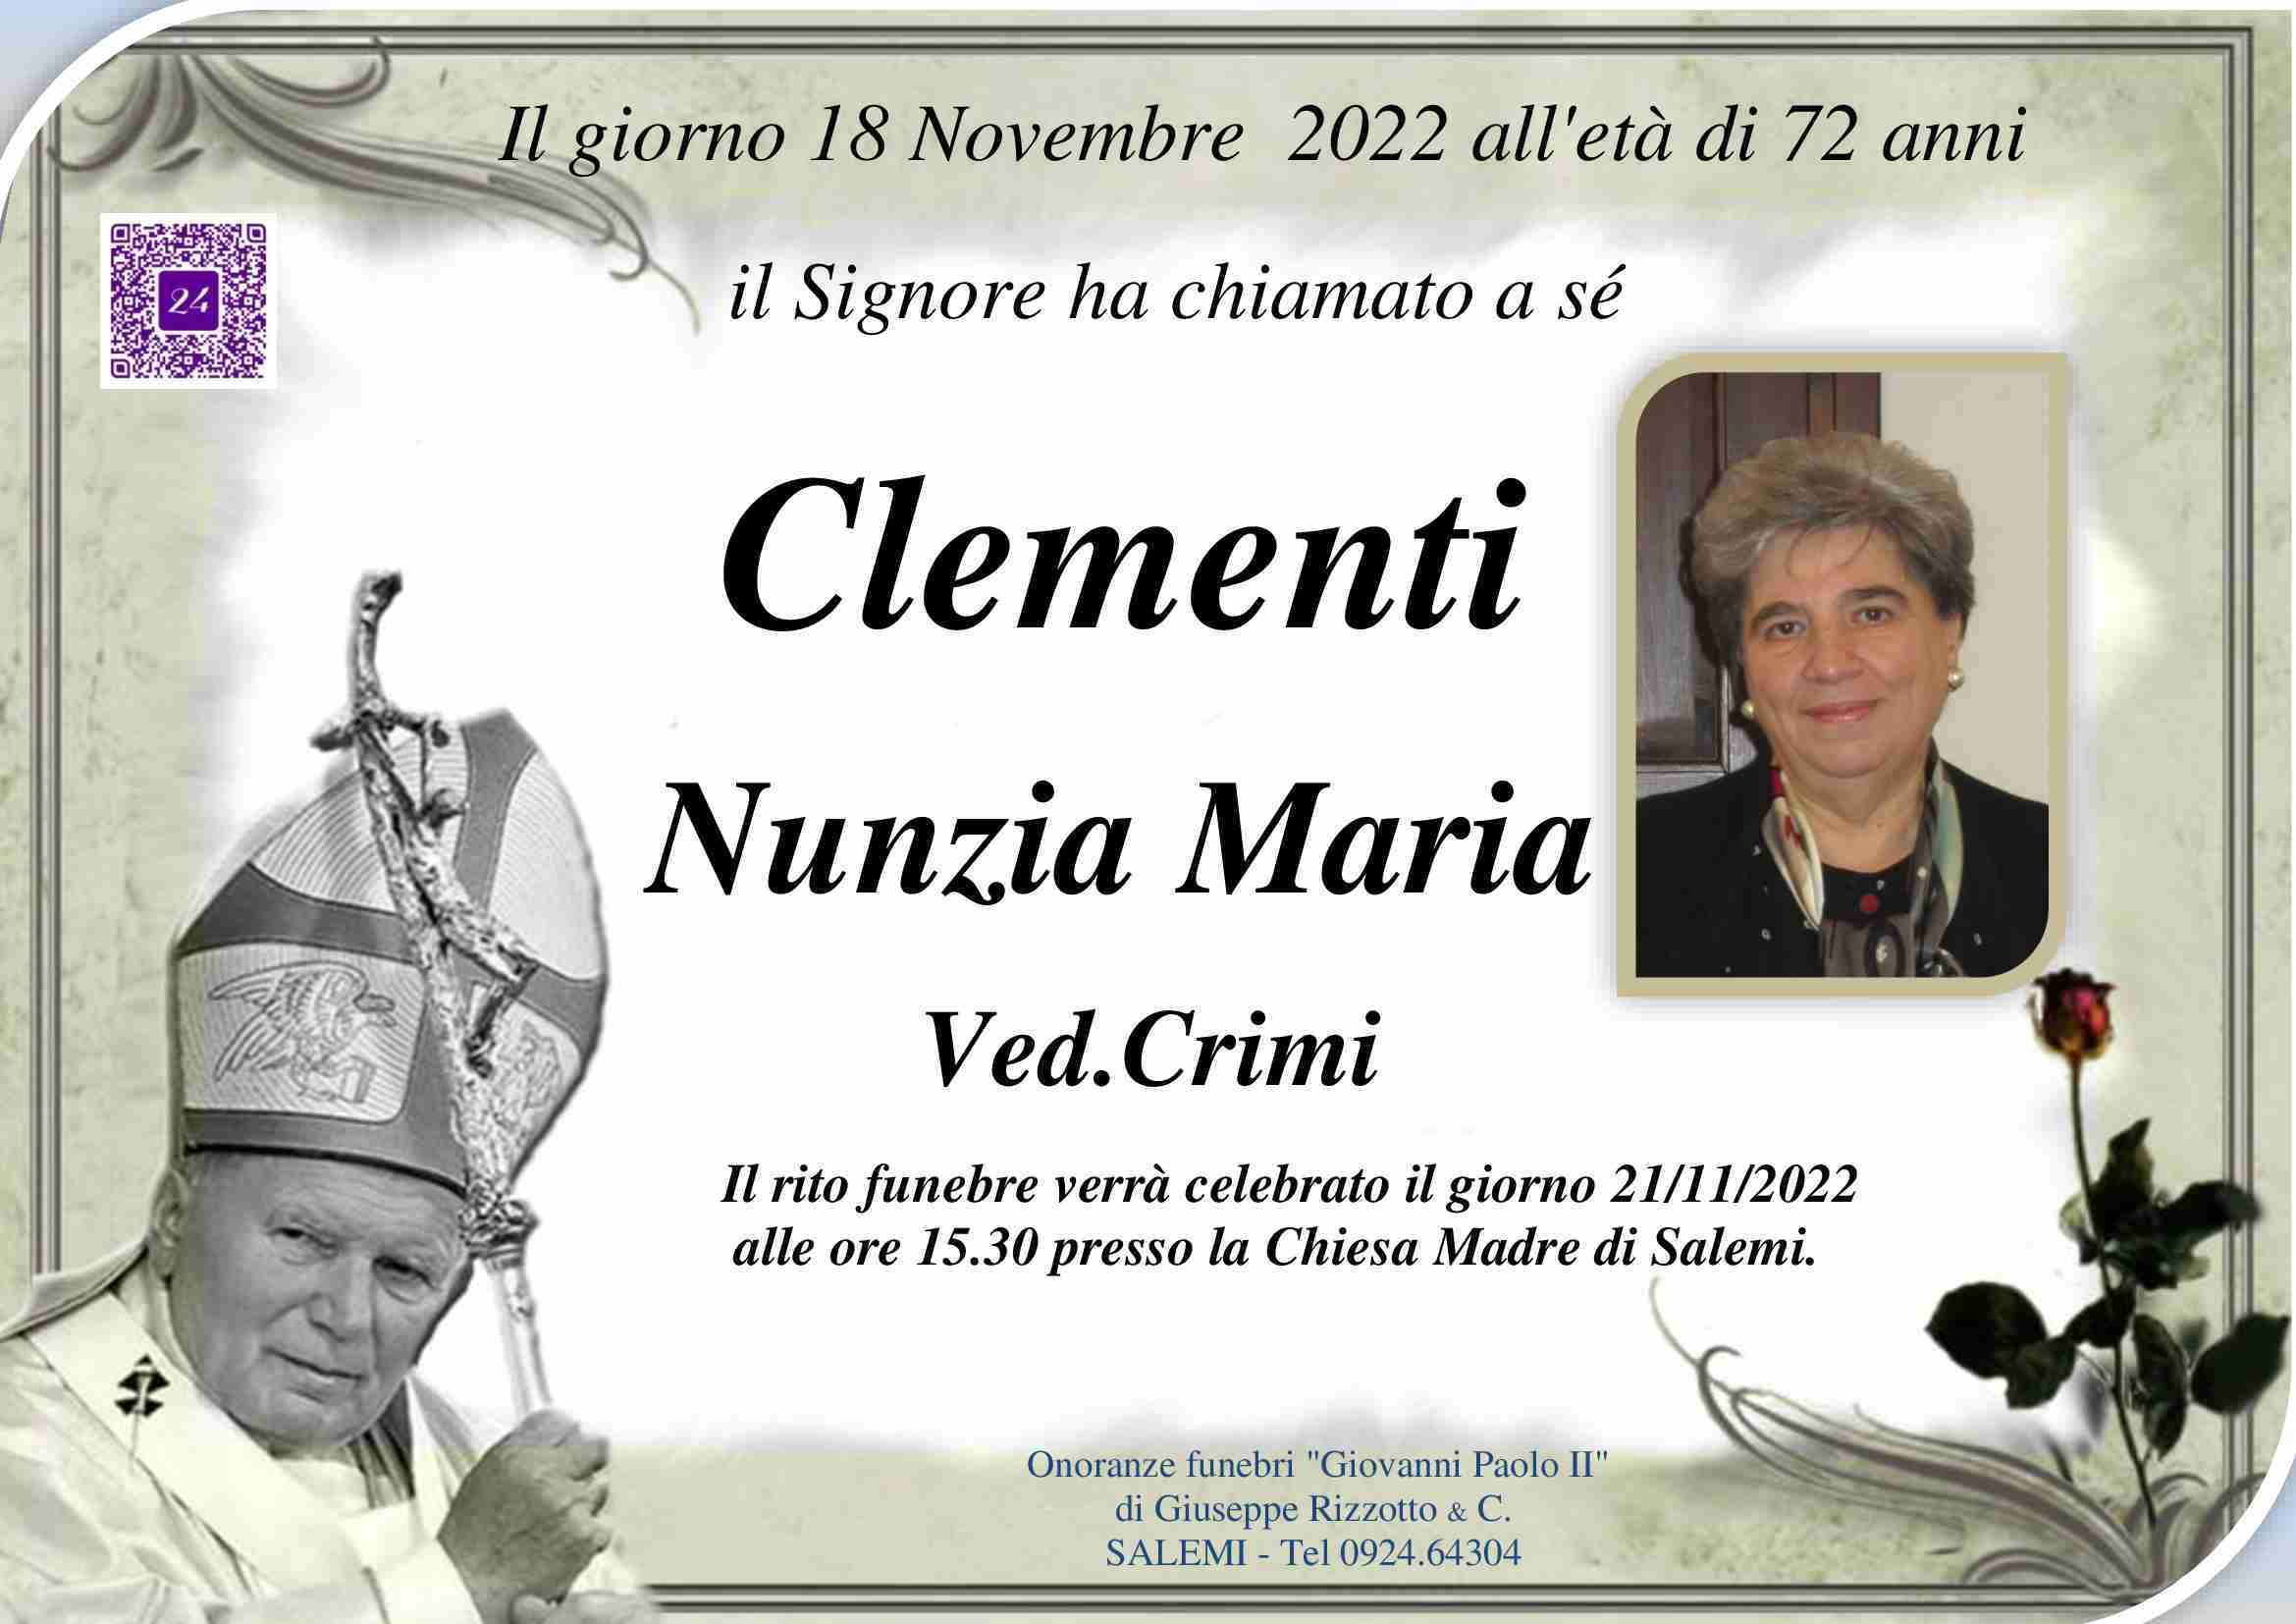 Nunzia Maria Clementi